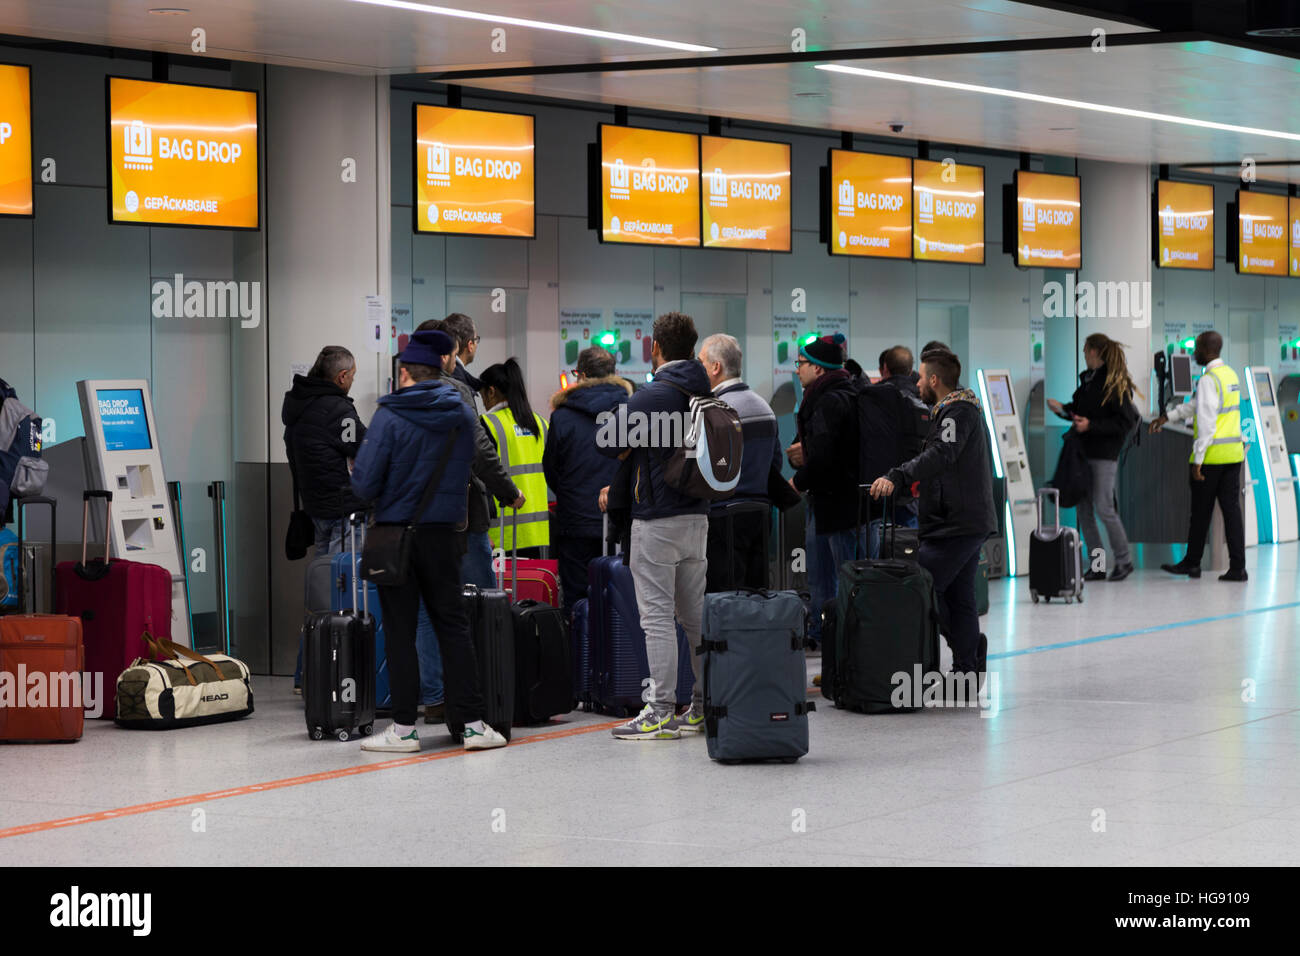 EasyJet Tasche Drop Passagiergepäck Drop off Punkt für Gepäck einchecken um  Halt auf Flug eingecheckt werden. Flughafen Gatwick UK Stockfotografie -  Alamy